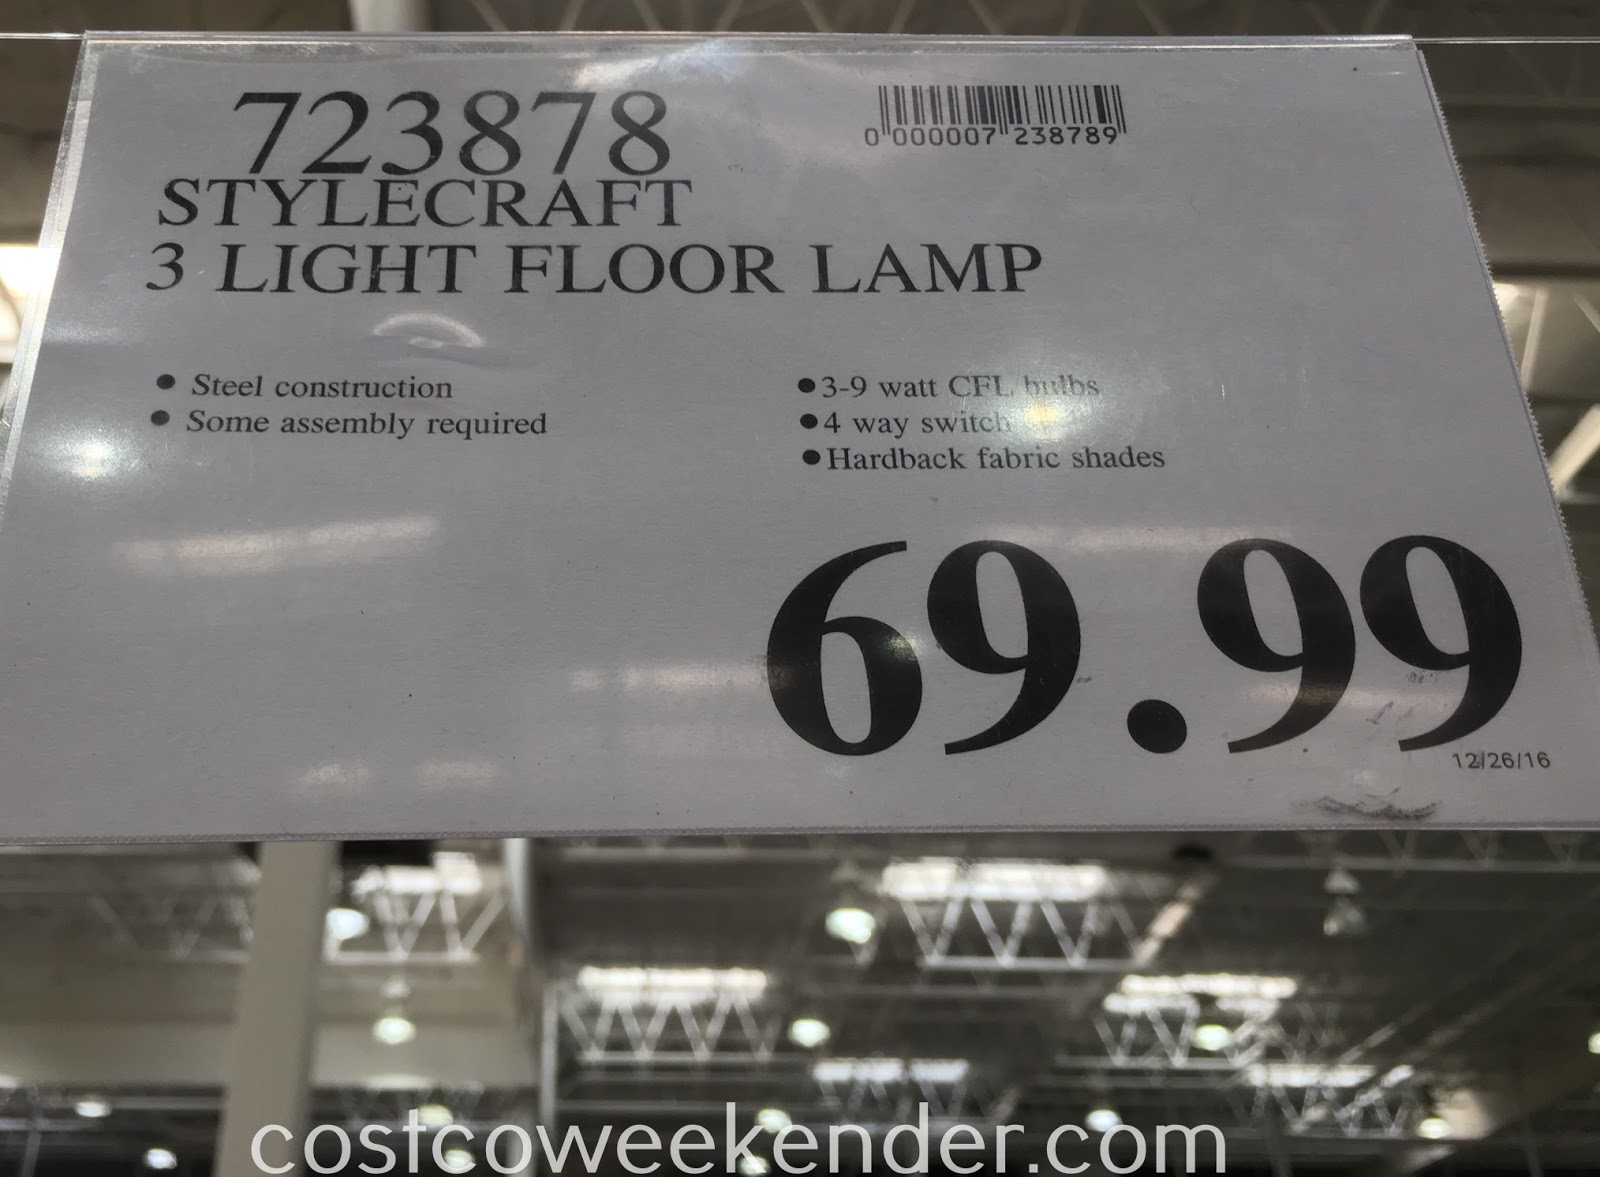 Stylecraft 3 Light Floor Lamp Costco Weekender with regard to proportions 1600 X 1177